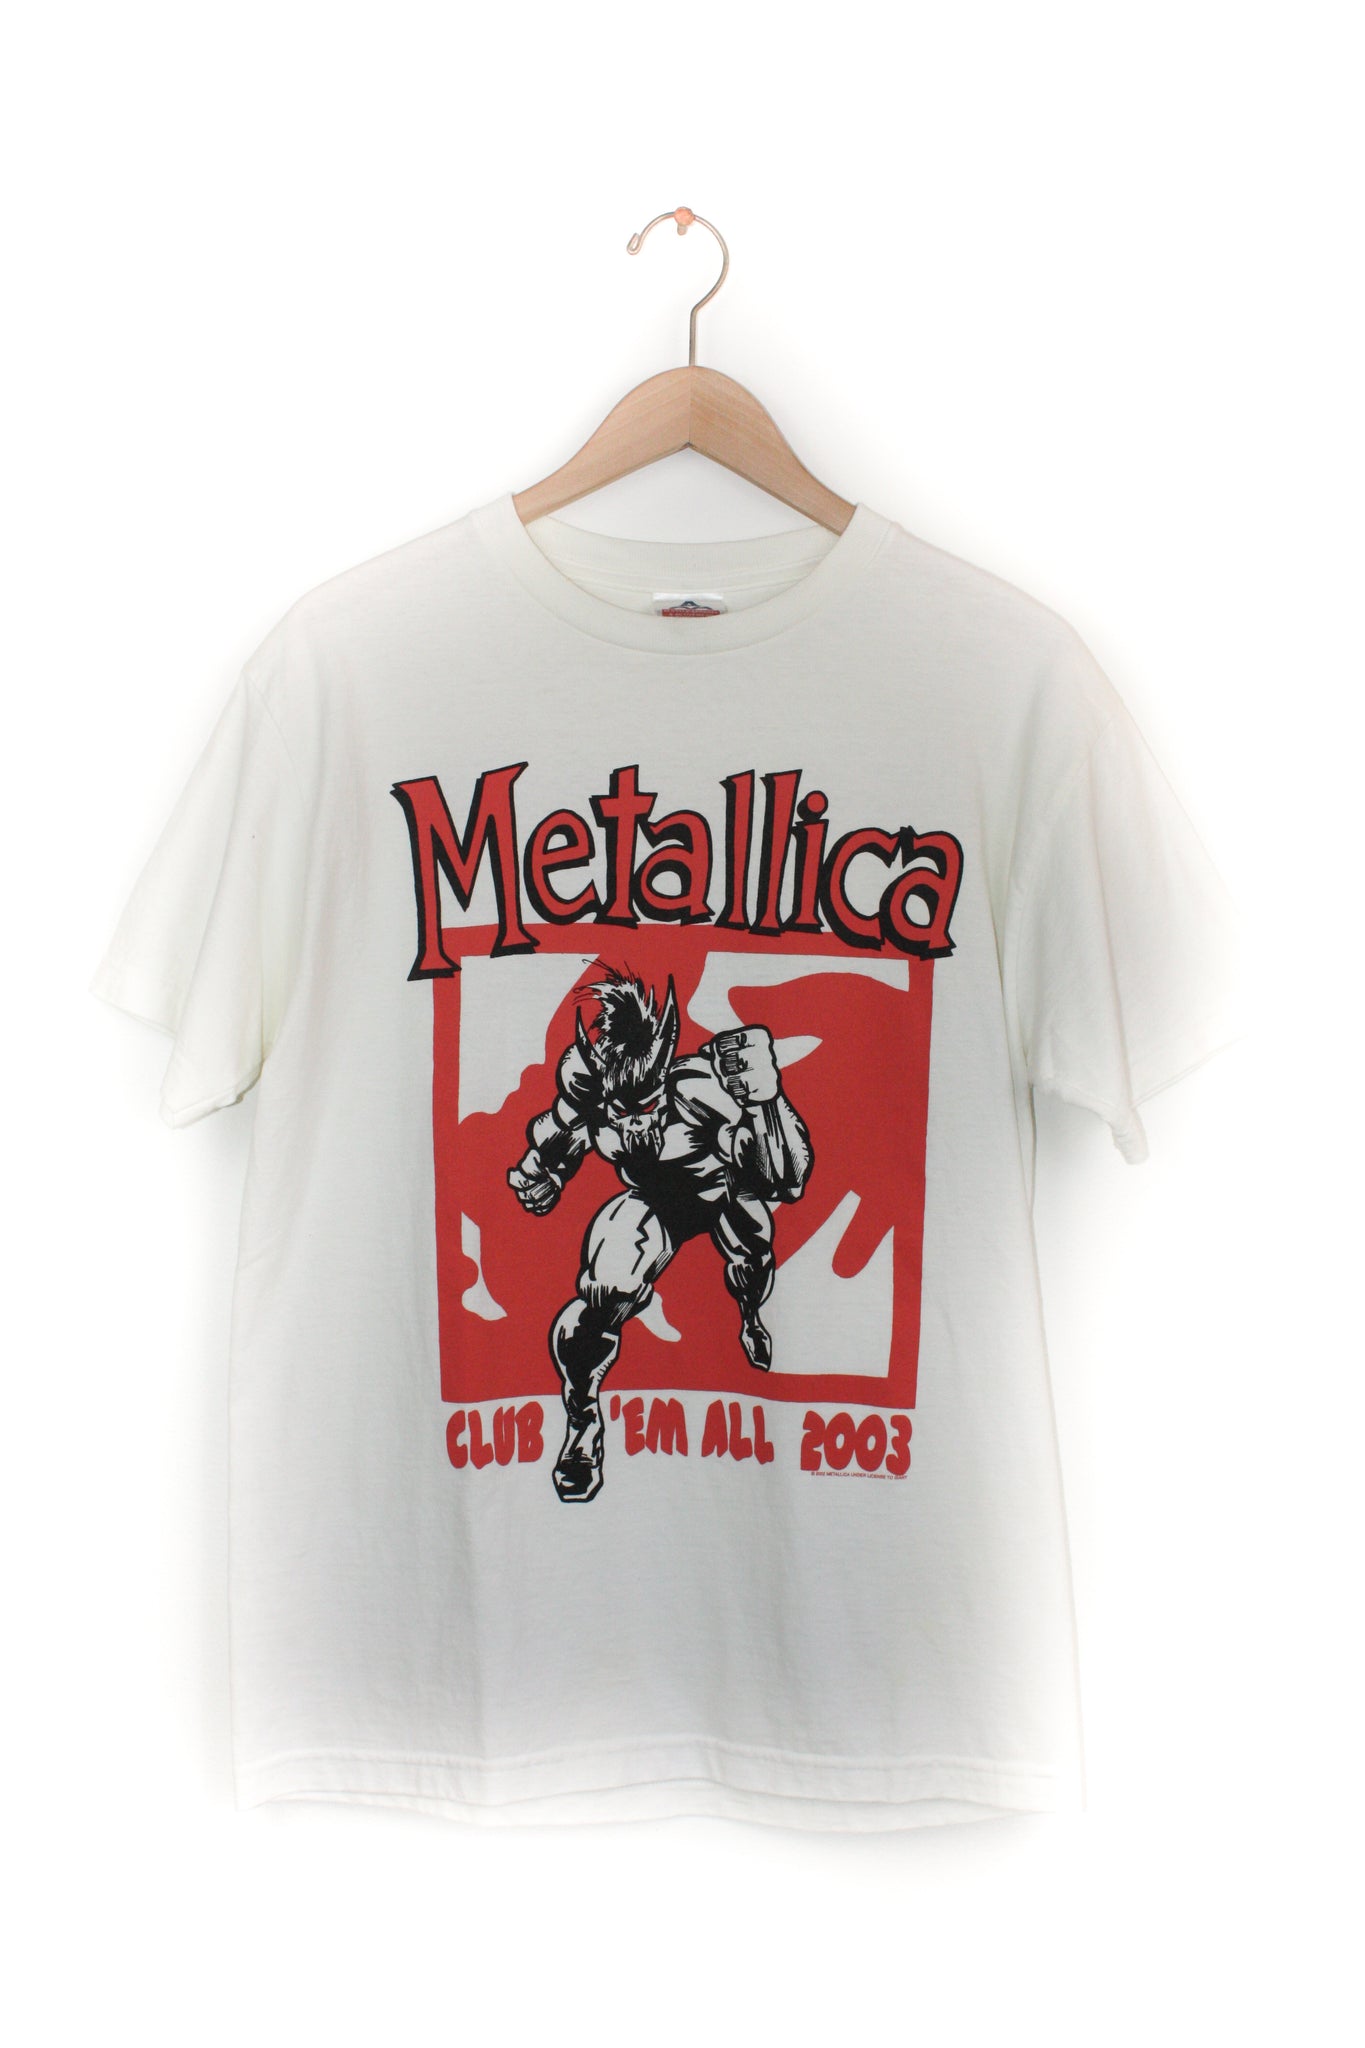 2003 METALLICA CLUB 'EM ALL